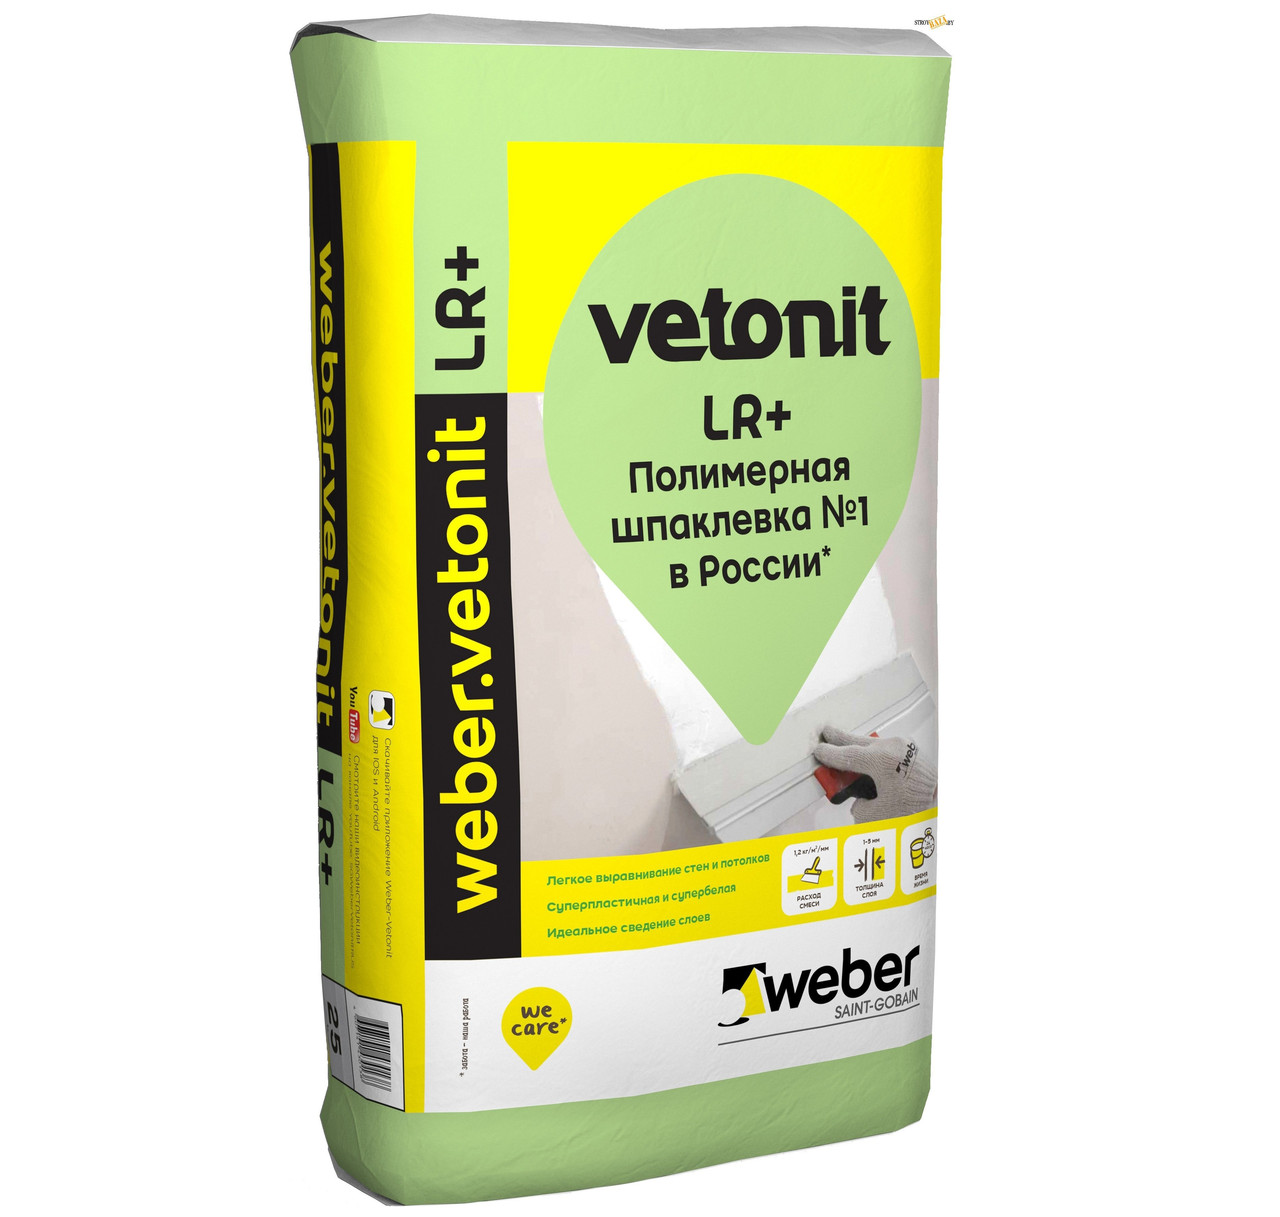 Шпаклевка Вебер Ветонит ЛР+, 20 кг, полимерная финишная белая, Weber vetonit LR+